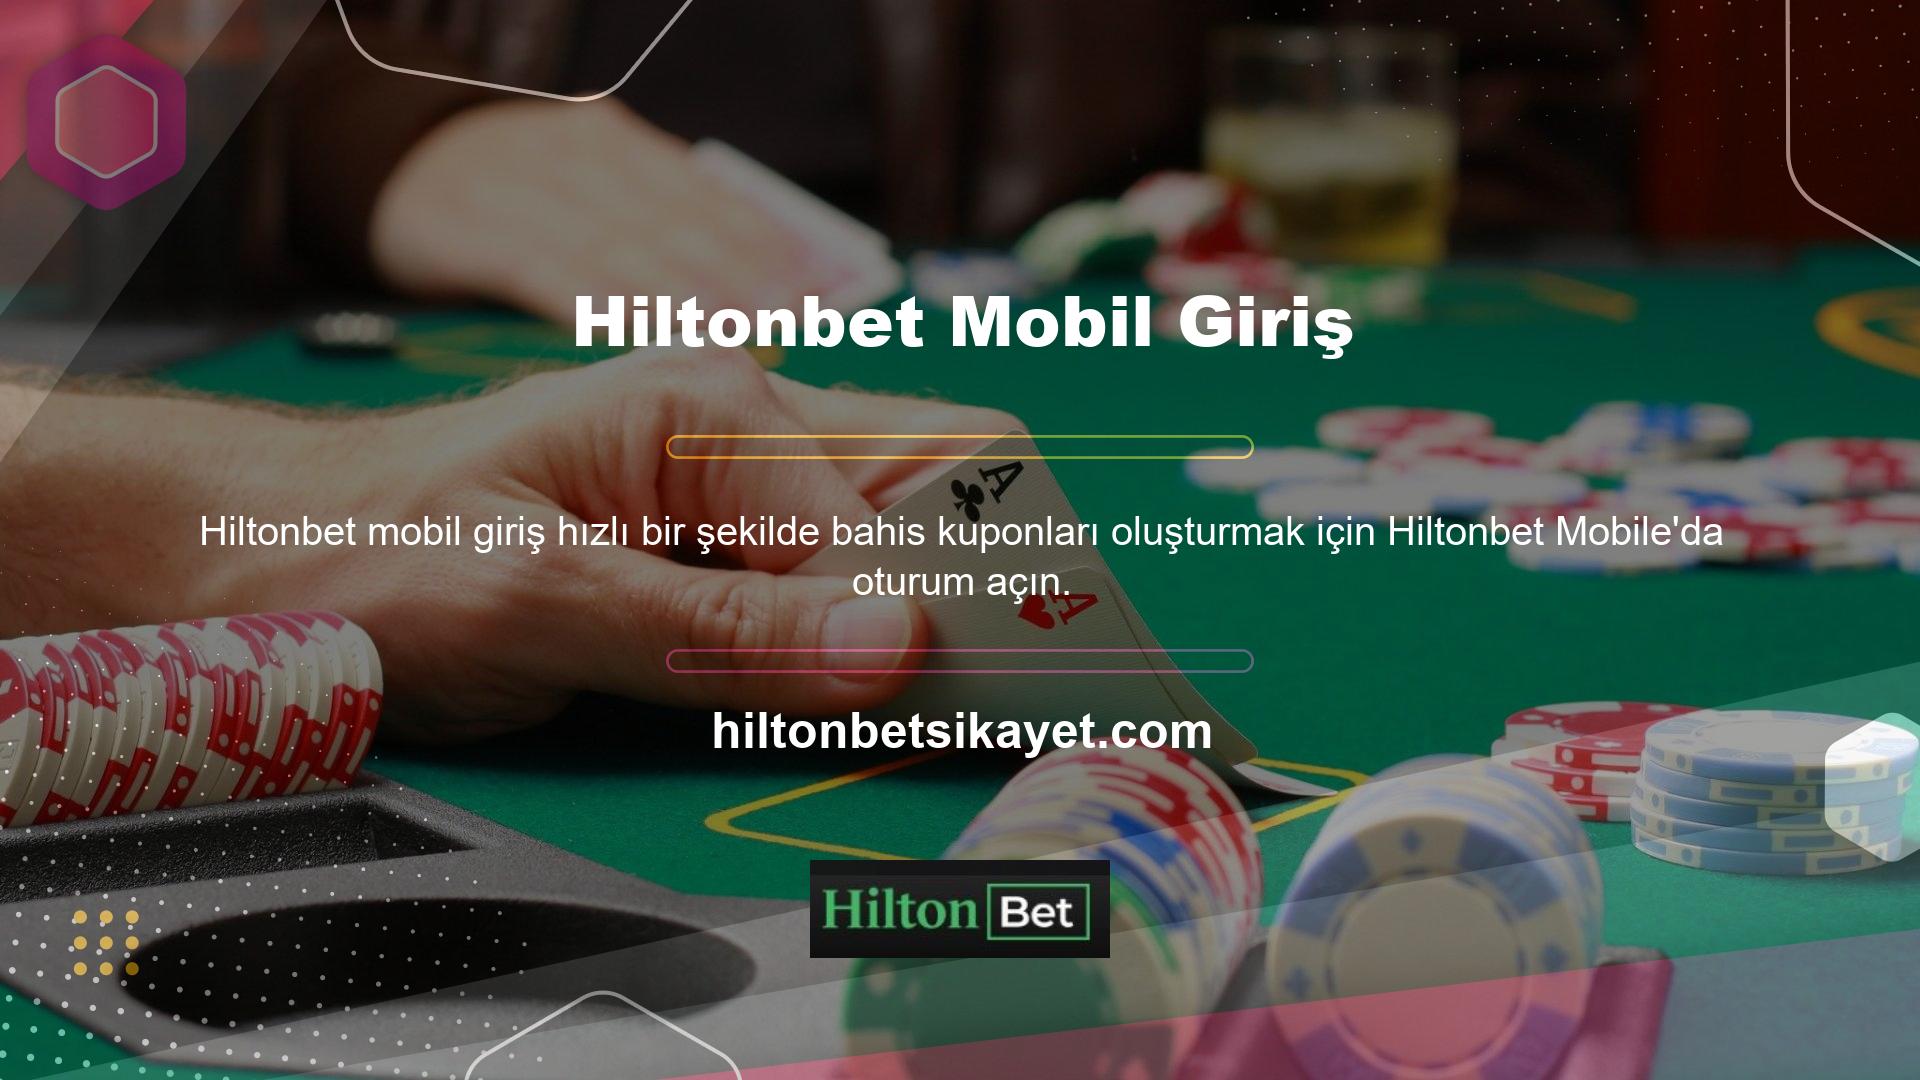 Hiltonbet masaüstü uygulaması çoğu insan için en iyi seçimdir ve Hiltonbet mobil uygulaması çoğu kullanıcı için en iyi seçimdir